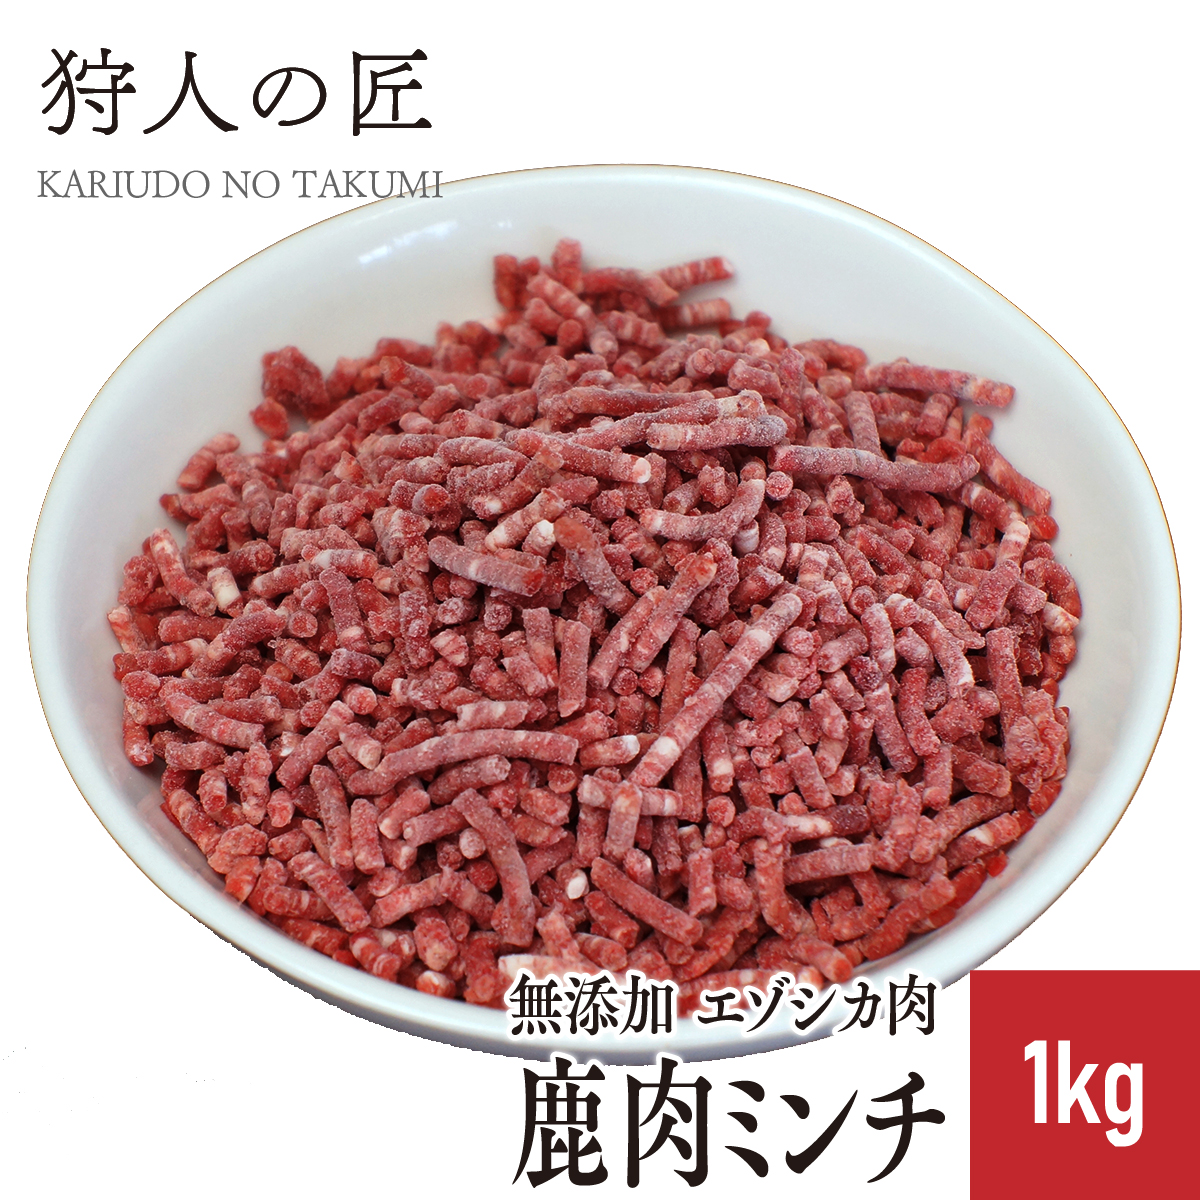 エゾ鹿肉 ミンチ (挽肉) 1kg